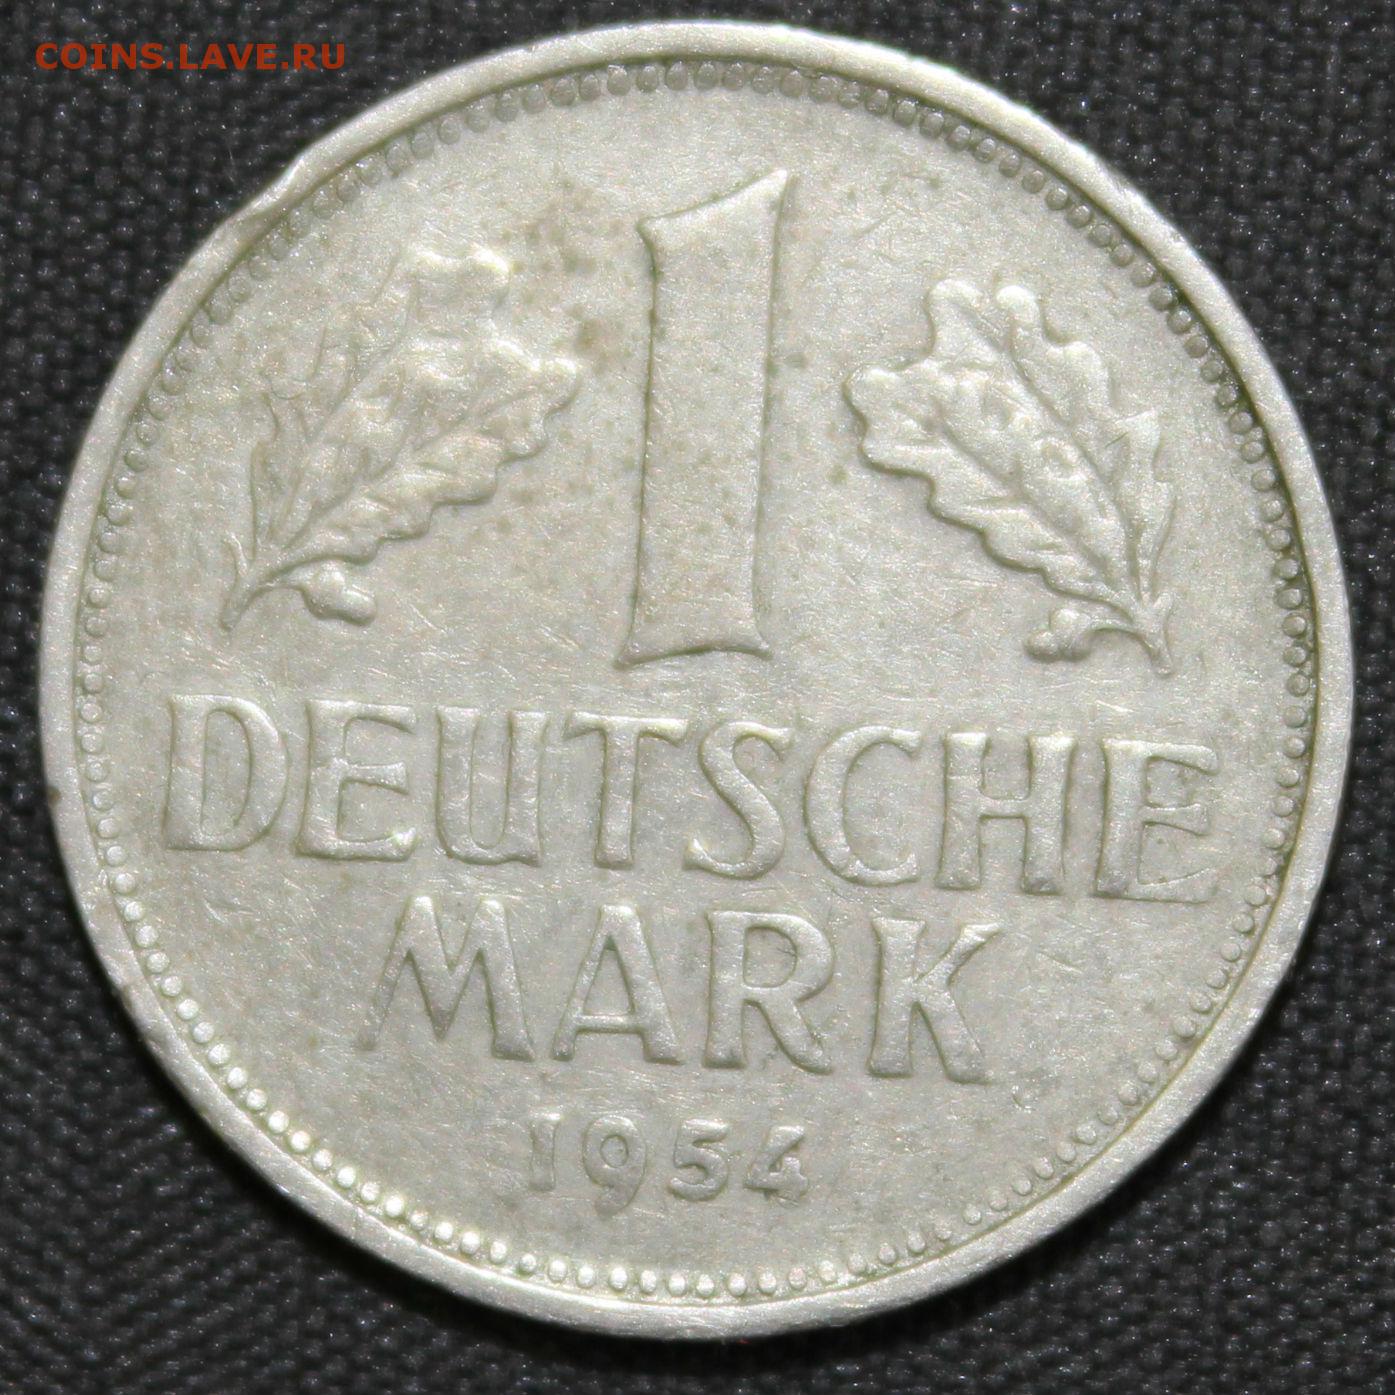 1 mark each. Немецкий рубль. 1 Немецкая марка 1965 года. Рубли в Германии.